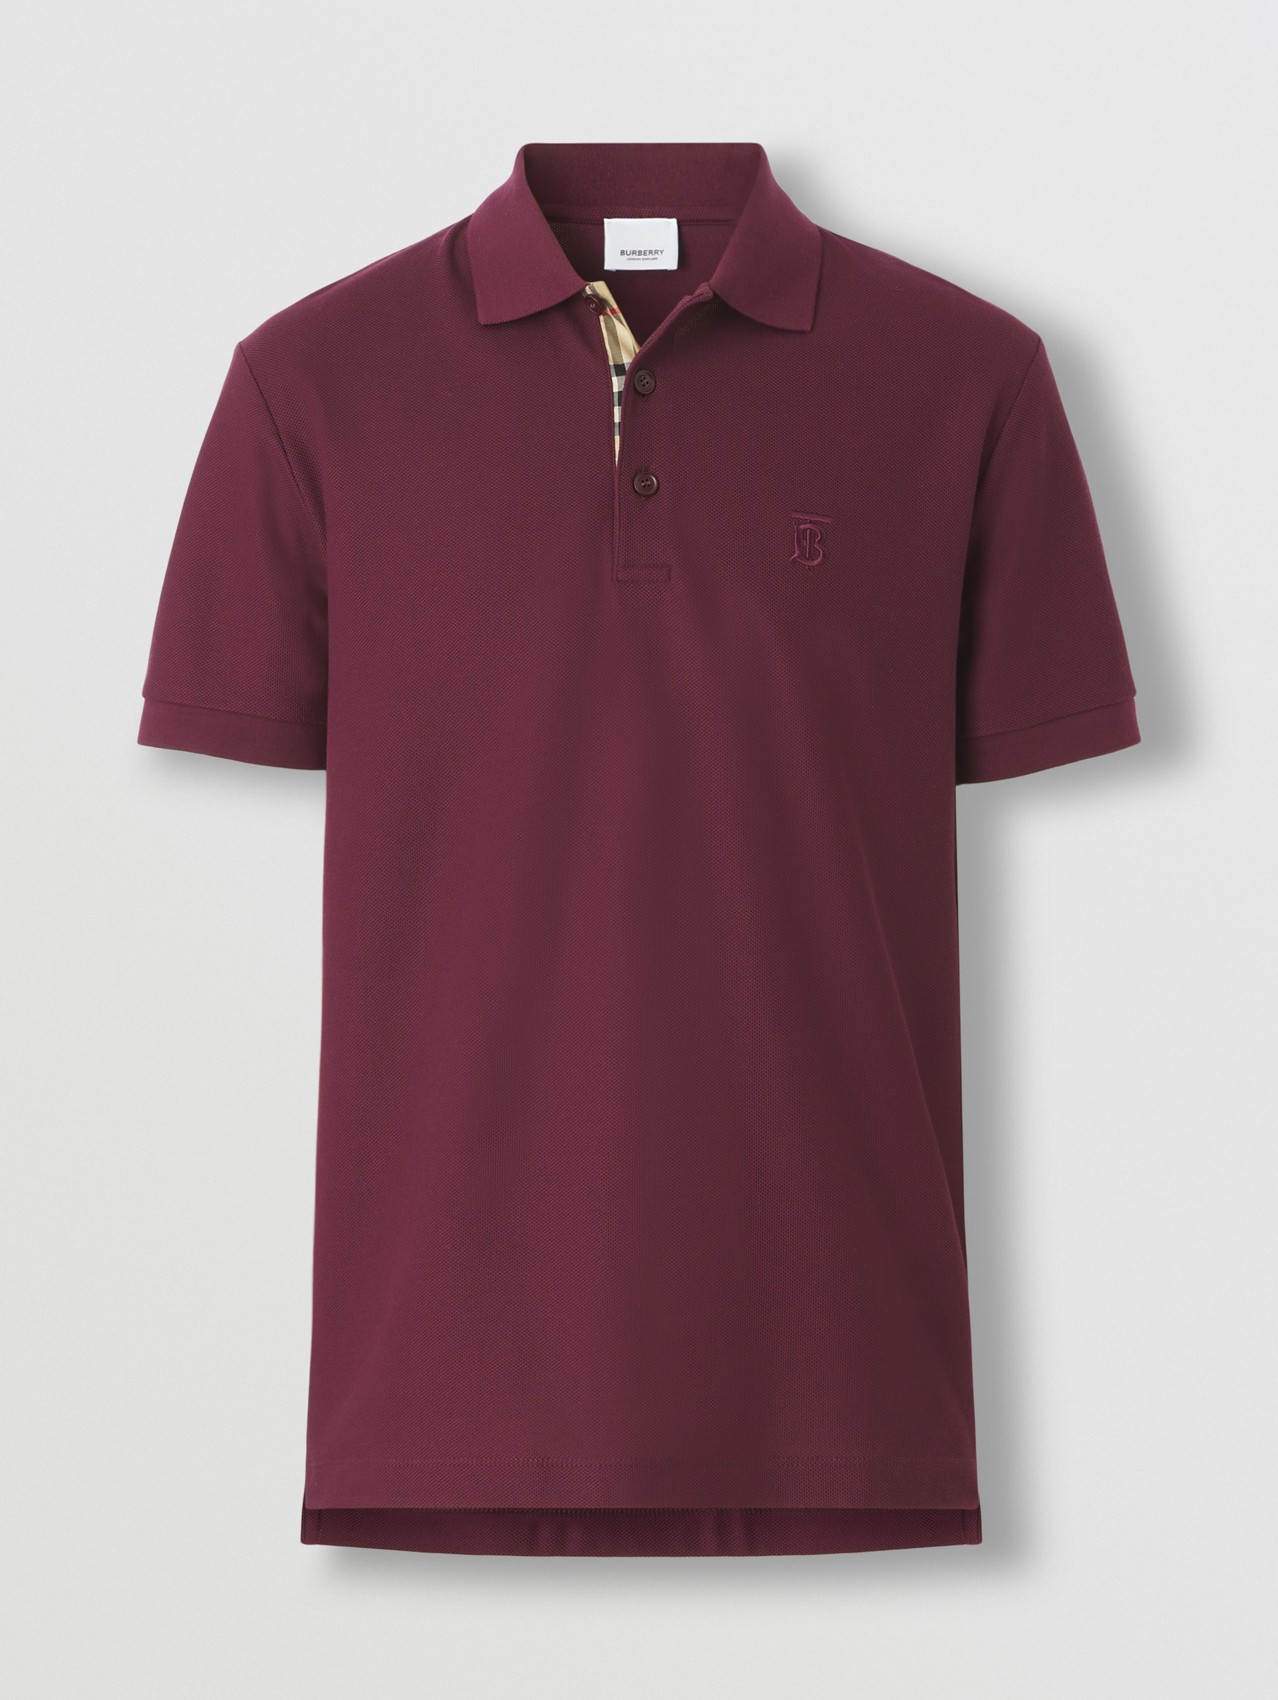 Monogram Motif Cotton Piqué Polo Shirt in Deep Maroon